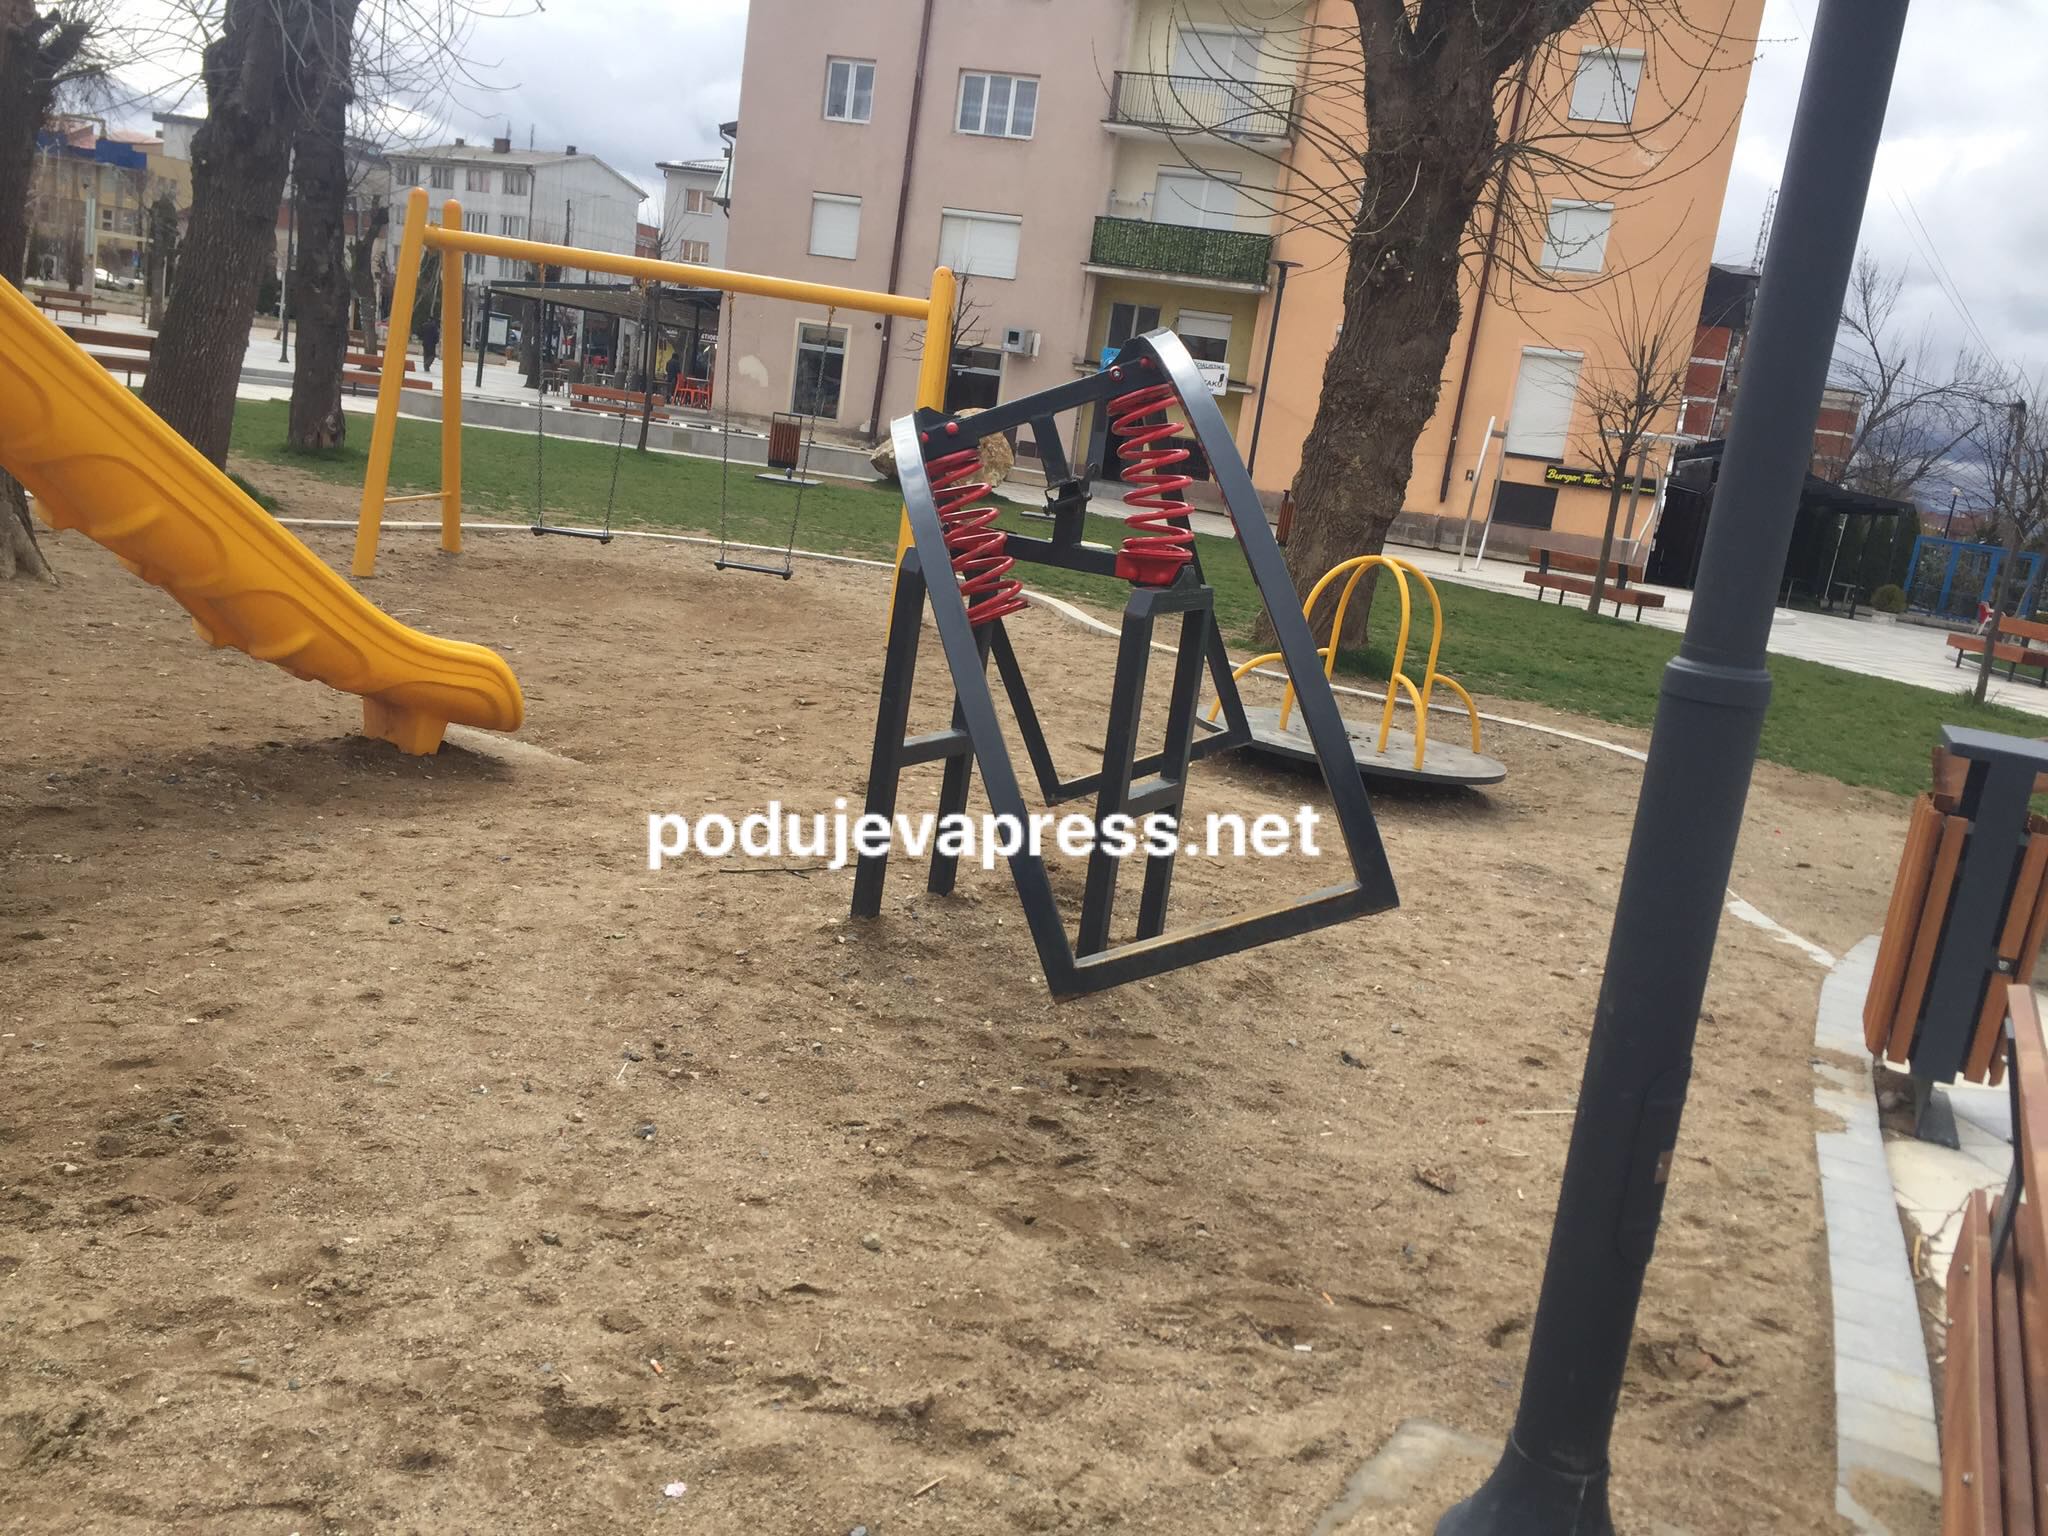  Ende pa kaluar një vit nga rregullimi, shkatërrohet parku i fëmijëve në sheshin e Podujevës |PAMJE